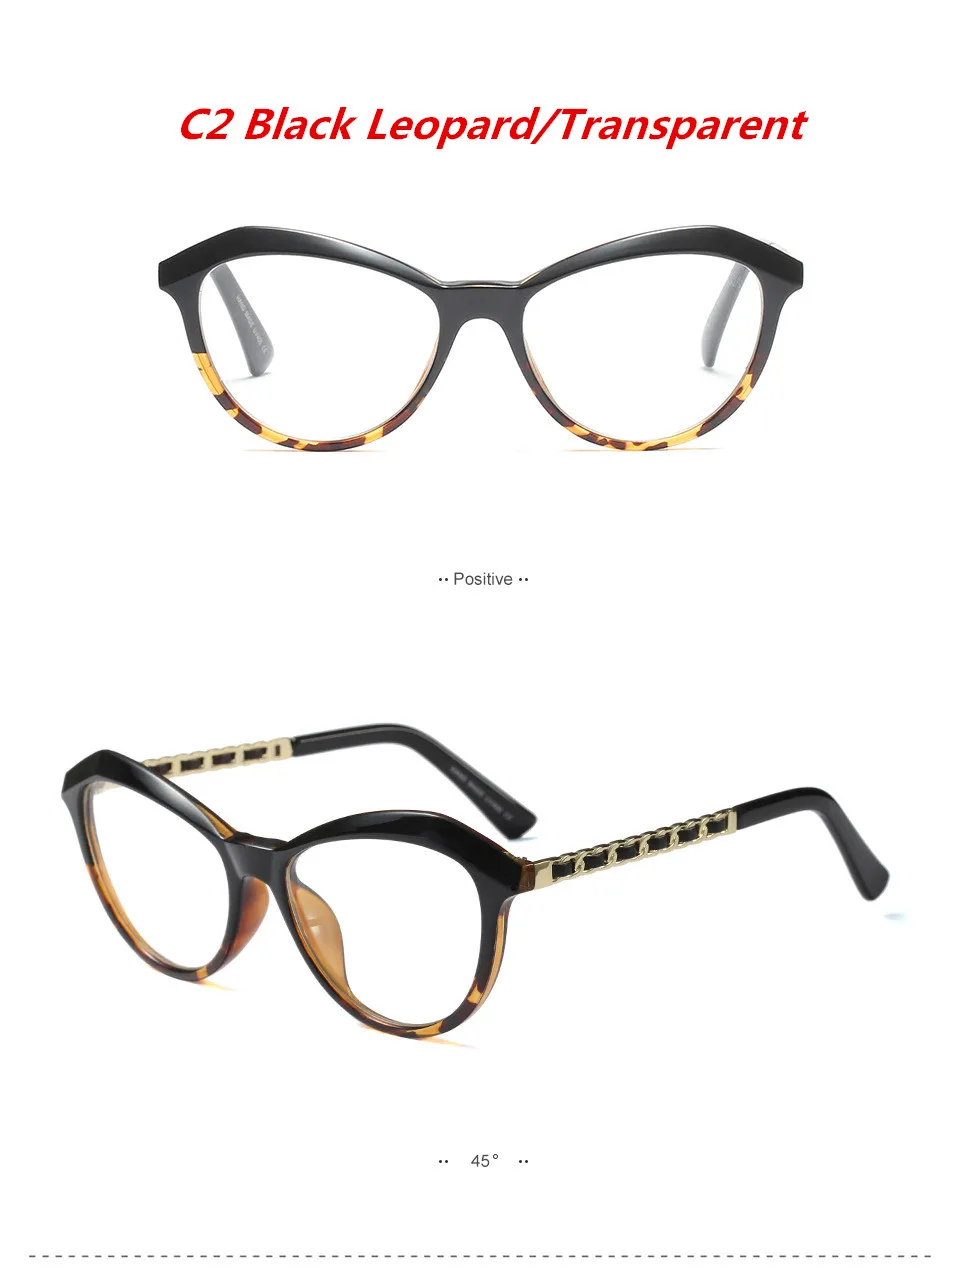 HUITUO Мода стиль Кошачий глаз прозрачная оправа для очков для женщин прозрачные компьютерные очки Ретро Индивидуальность плоская рамка - Цвет оправы: C2